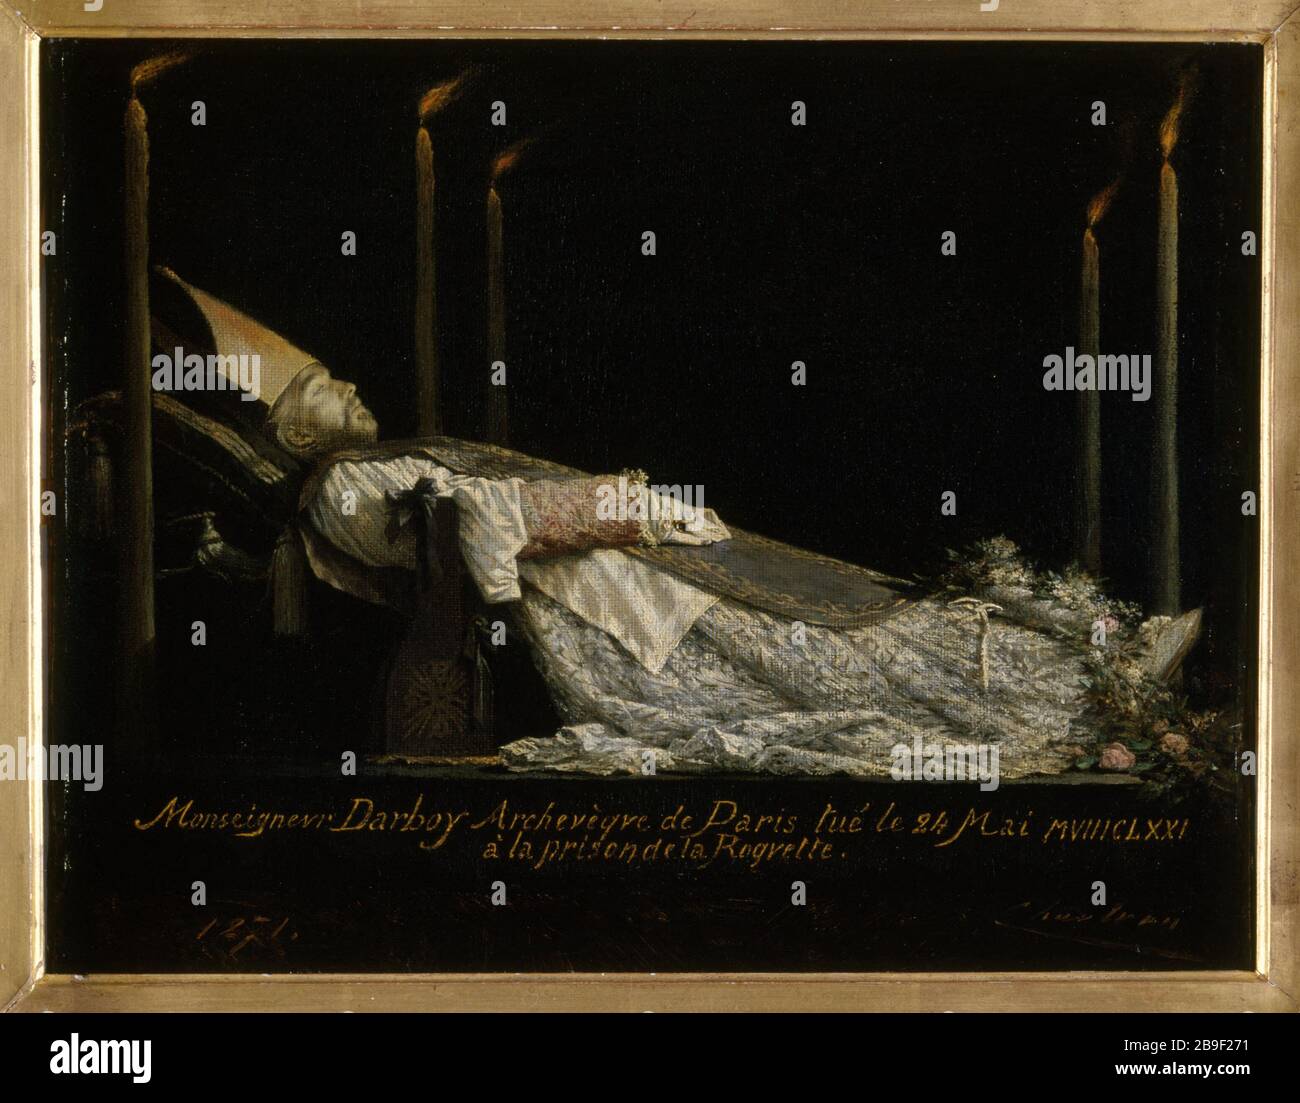 SIR DARBOY (13-1871), ERZBISCHOF VON PARIS, erschoss den 24 Mai 1871 Théobald Chartran (1849-1907). 'Monseigneur Darboy (1813-1871), archevêque de Paris, fusillé le 24 Mai 1871'. Huile sur toile, 1871. Paris, musée Carnavalet. Stockfoto